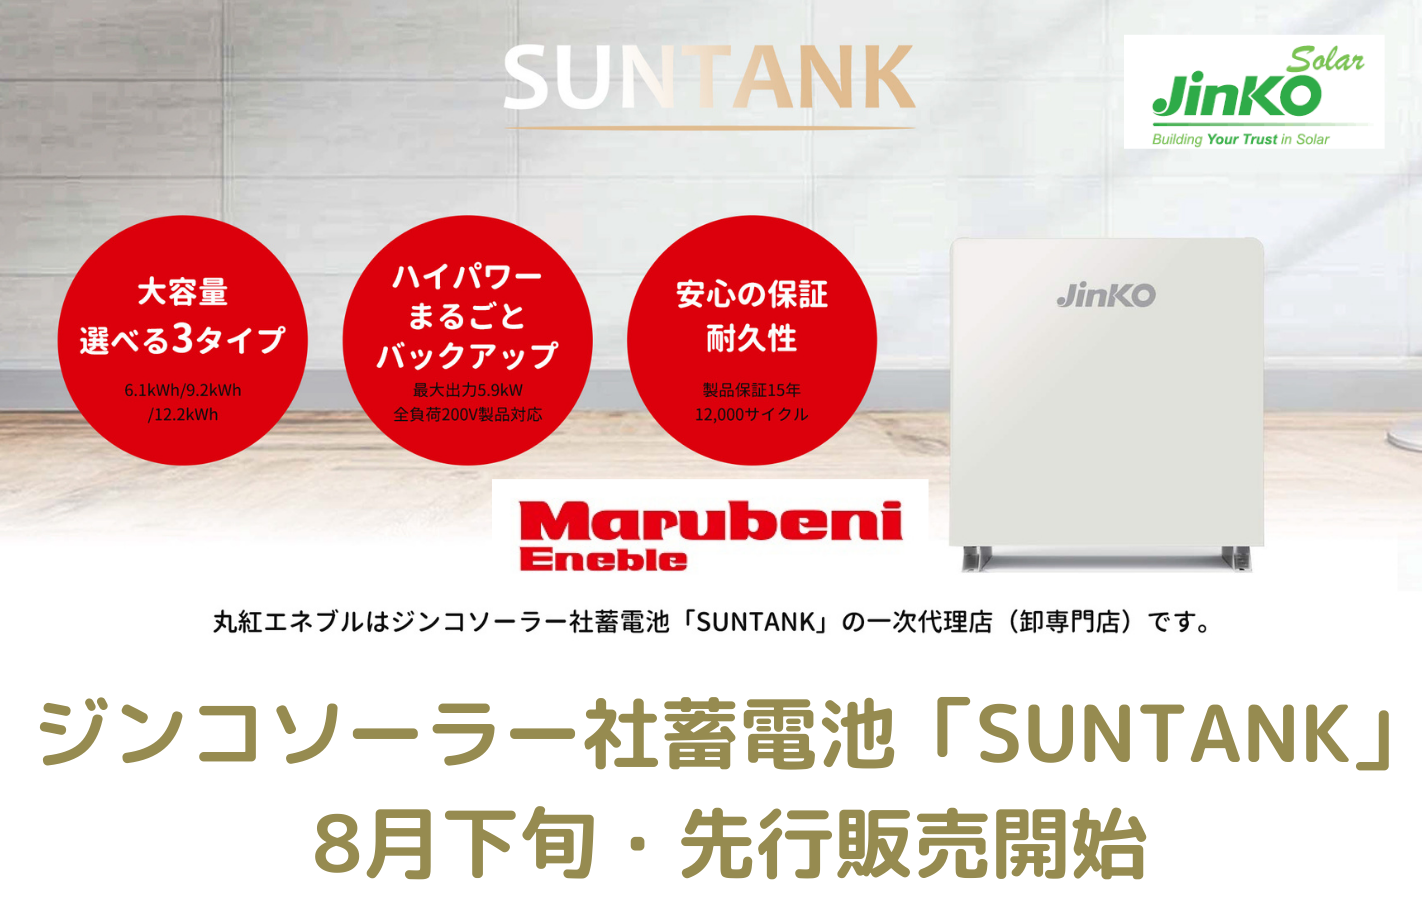 【新発売】ジンコソーラー蓄電池「SUNTANK」(Jinko solar)は低価格・高品質-丸紅エネブル  